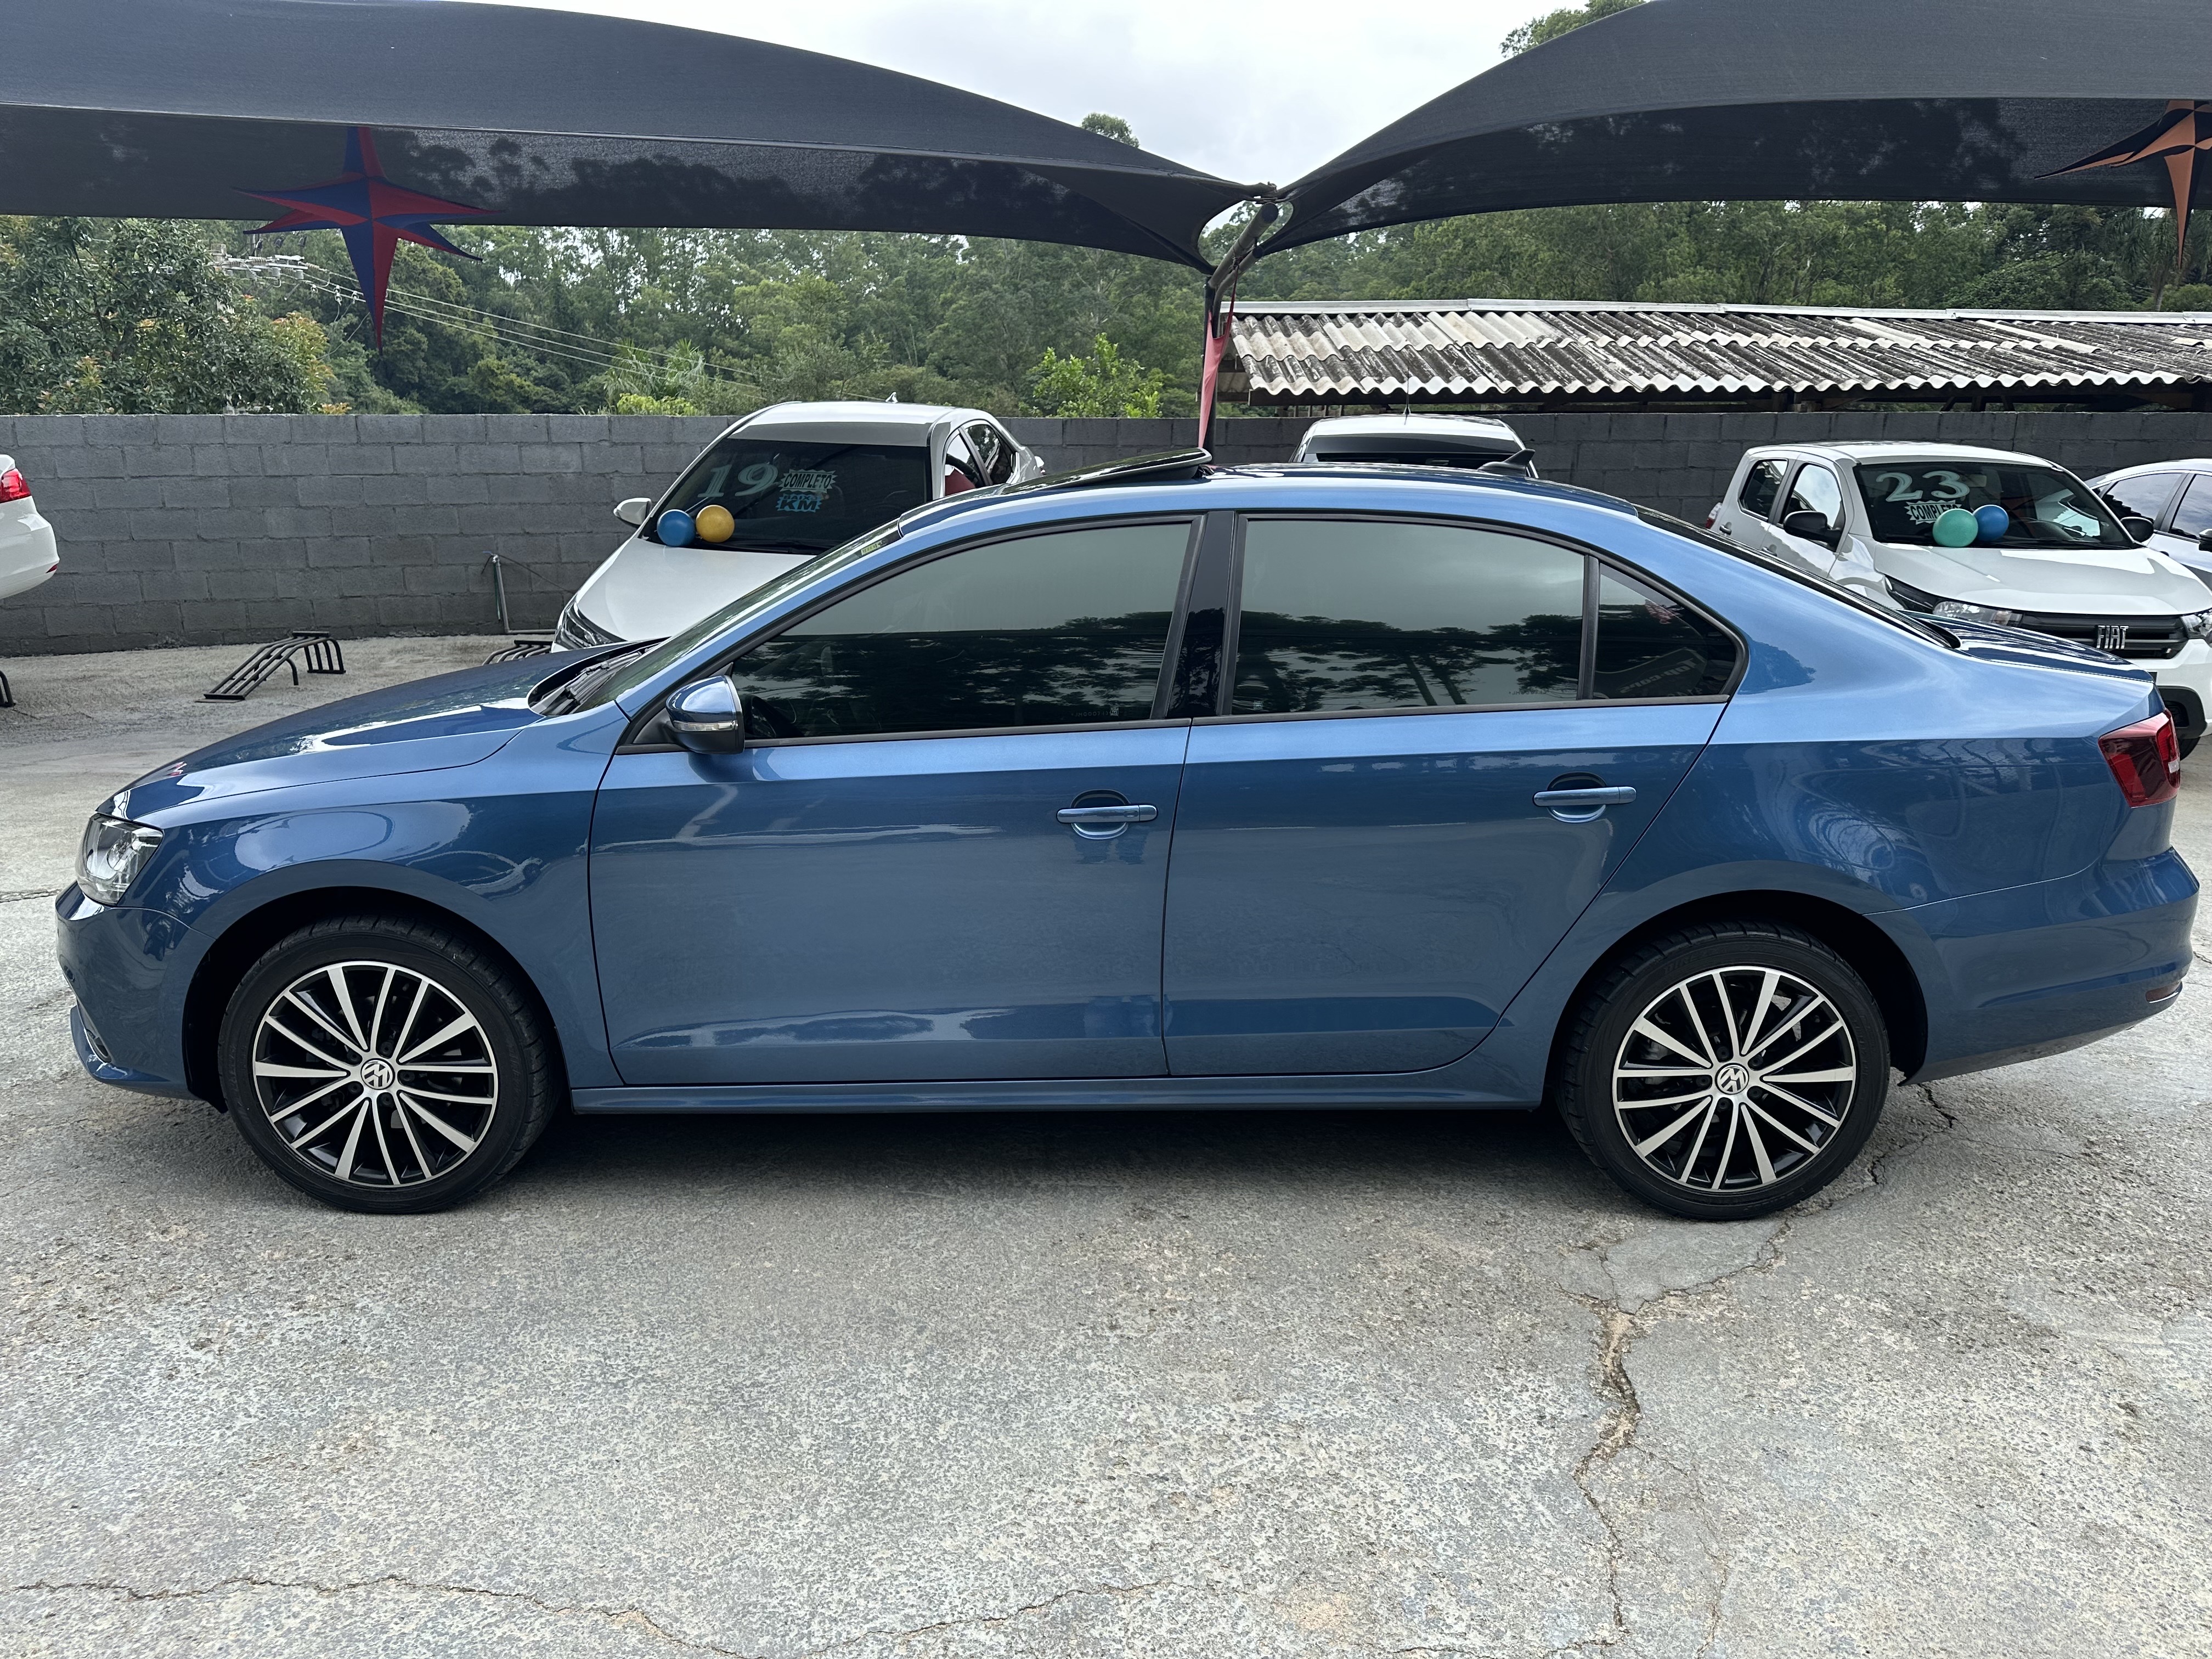 Volkswagen Jetta Azul